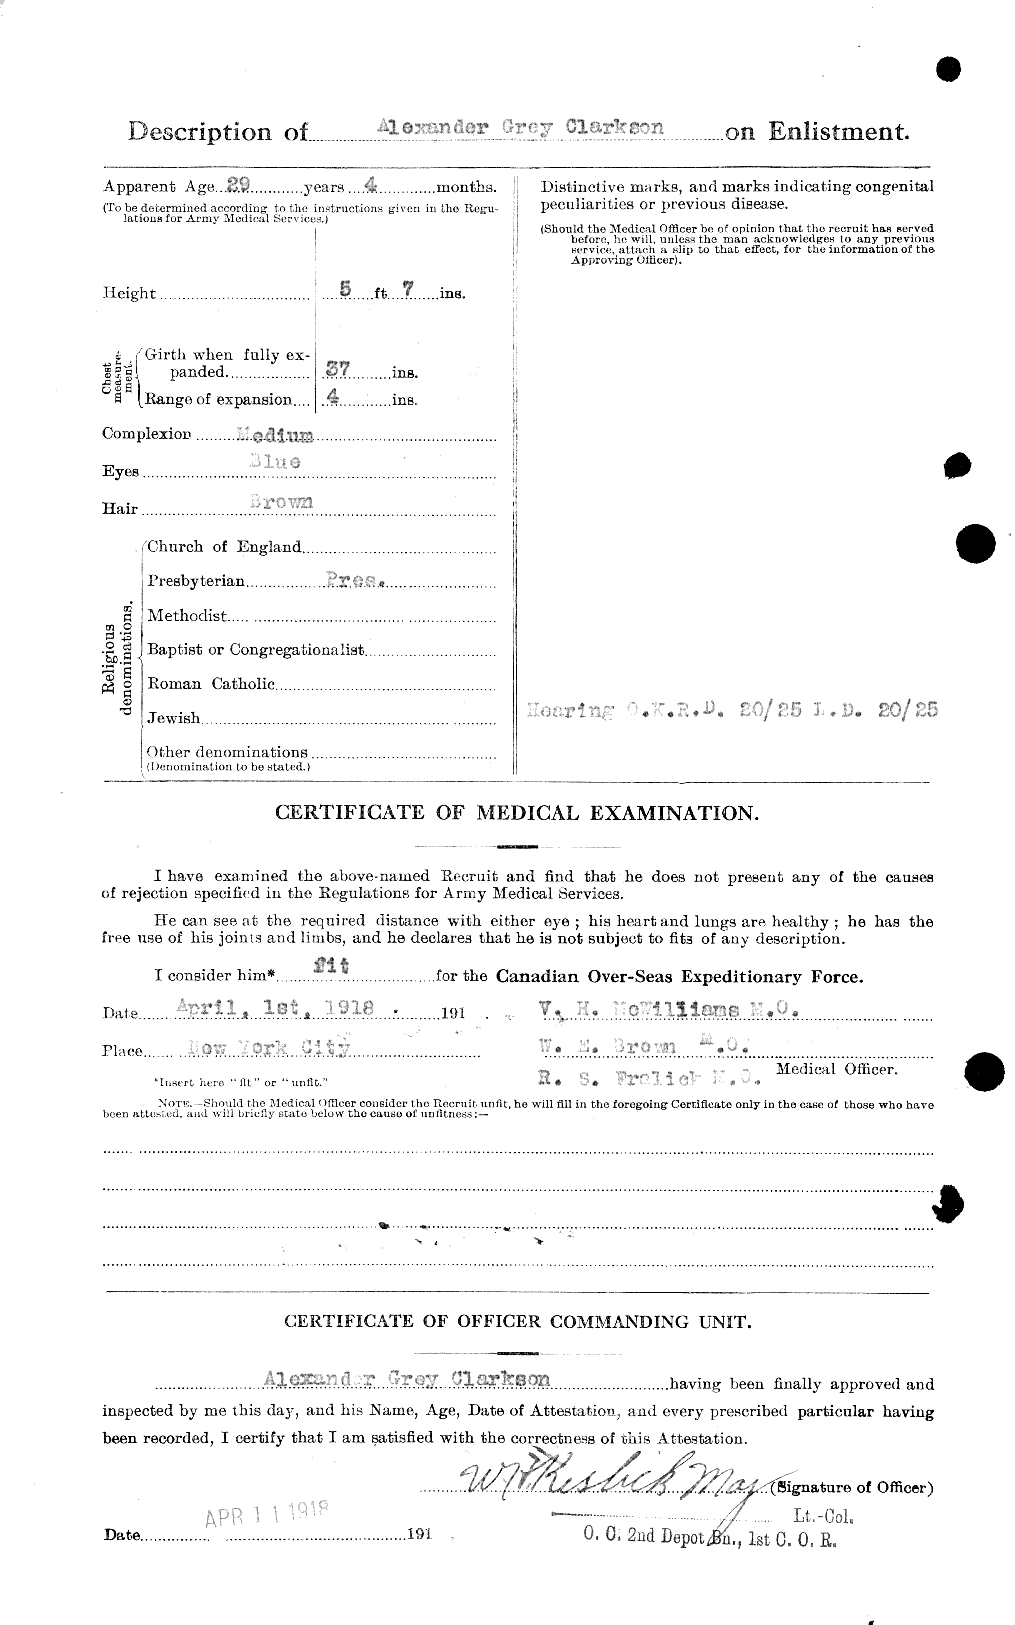 Dossiers du Personnel de la Première Guerre mondiale - CEC 023612b